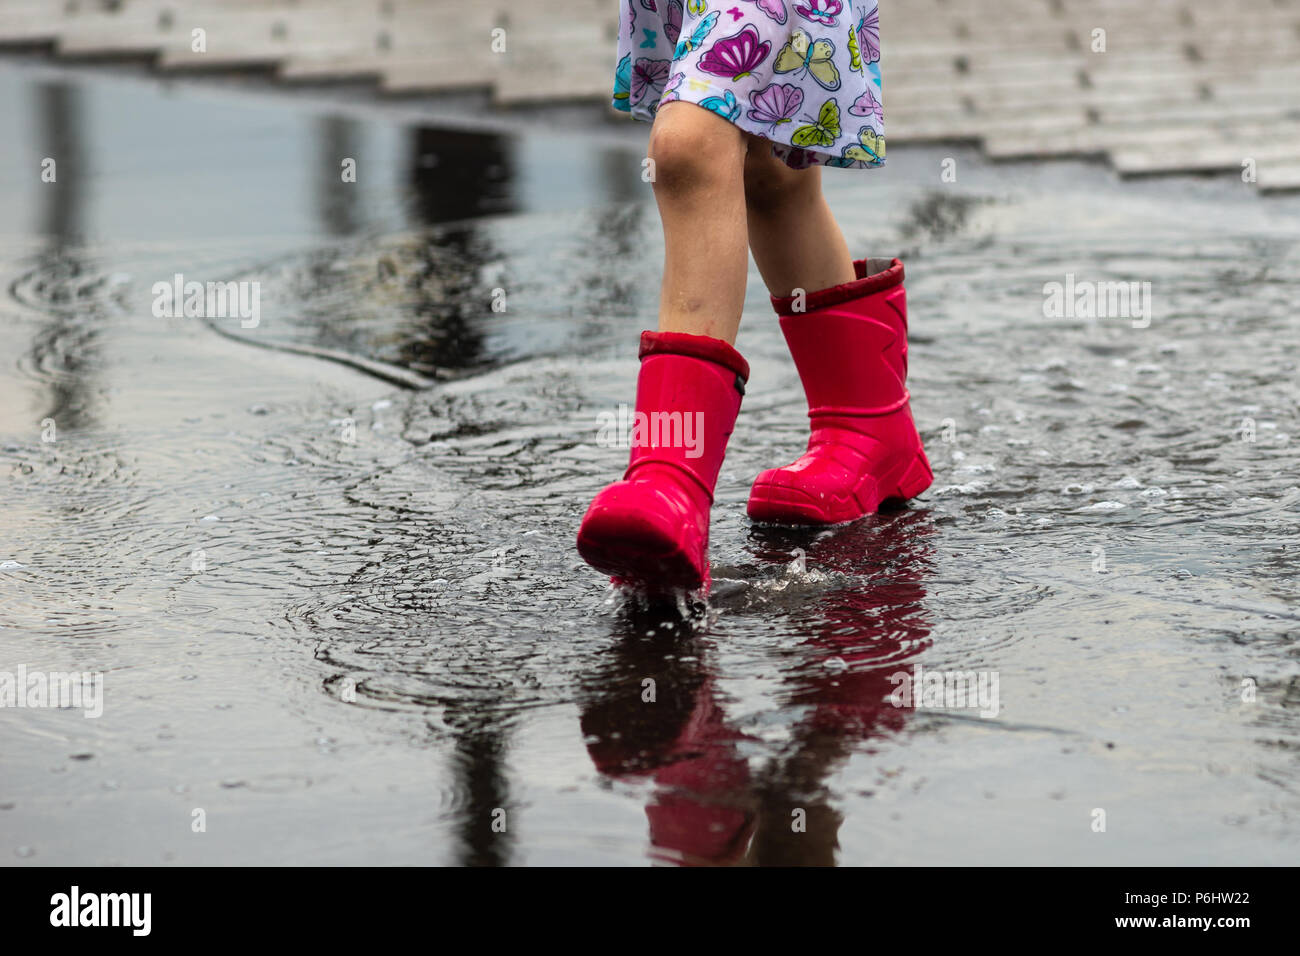 Météo russe, Moscou. Samedi, 30 juin, 2018. Les jambes d'une jeune fille non identifiée, méconnaissable en rouge des bottes de pluie. La fille va à travers la flaque. Banque D'Images